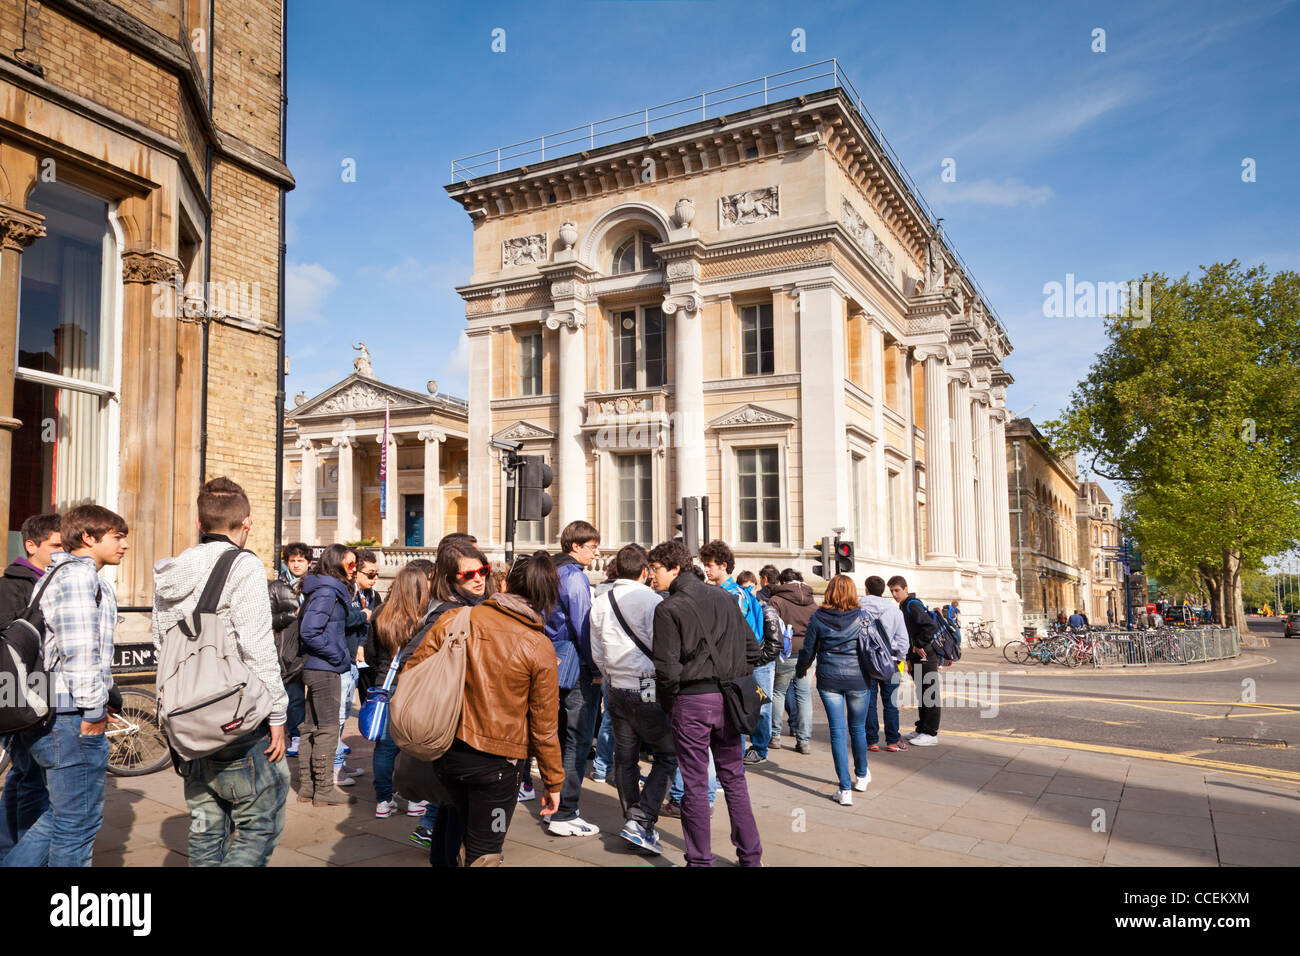 Un groupe d'adolescents à l'extérieur de l'Ashmolean Museum, Beaumont Street, Oxford, Angleterre. Banque D'Images